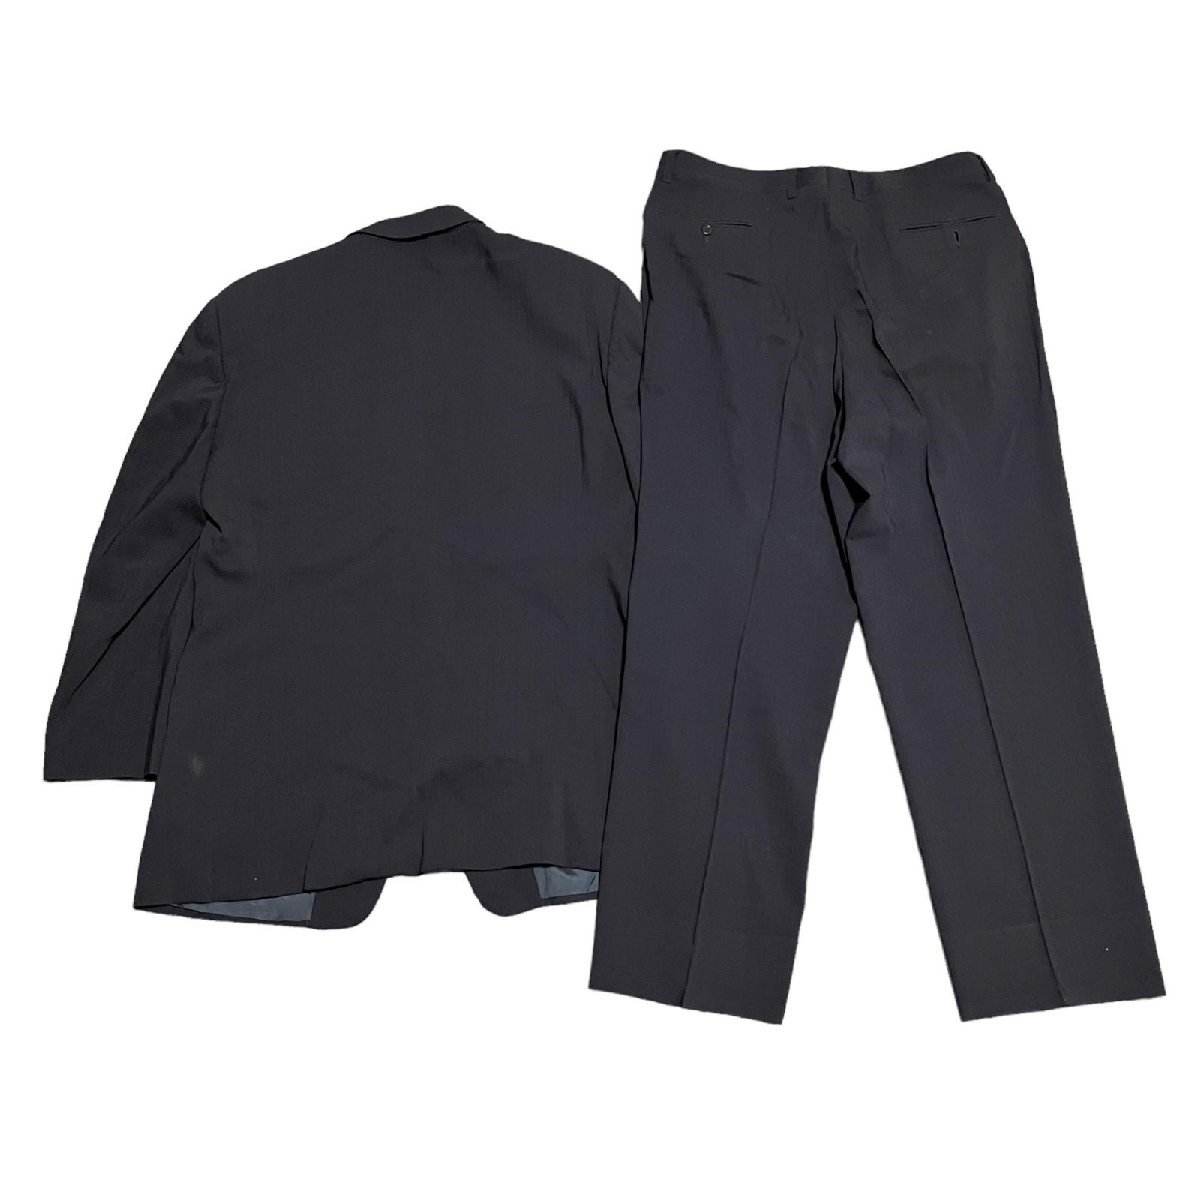 ARMANI COLLEZIONI アルマーニコレッツォーニ スーツ ジャケット パンツ 黒系 メンズ 52_画像2